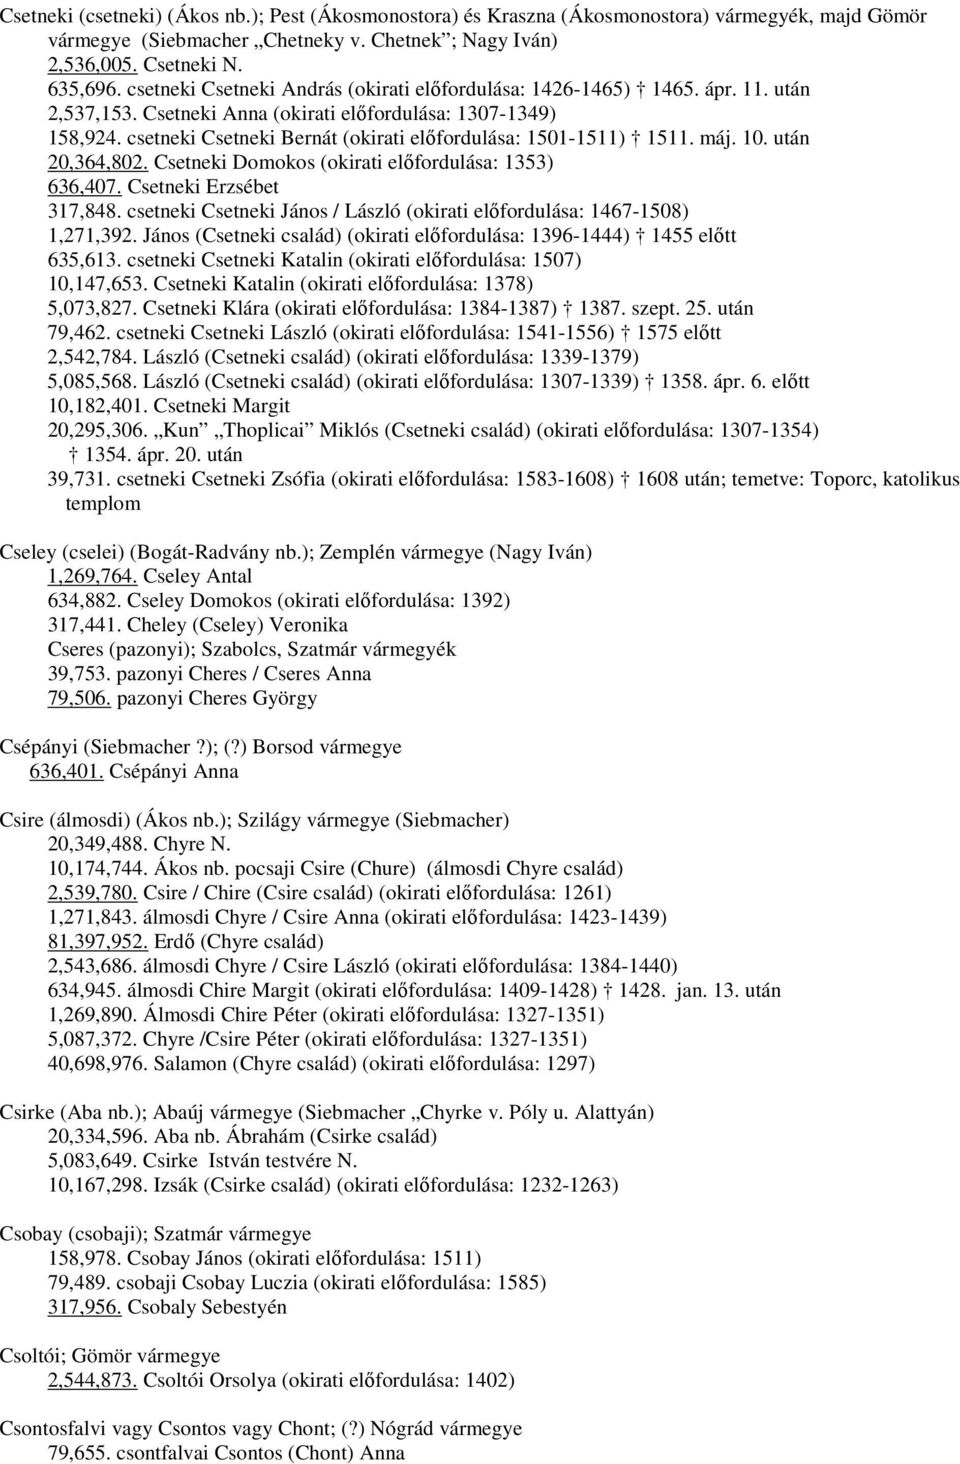 csetneki Csetneki Bernát (okirati előfordulása: 1501-1511) 1511. máj. 10. után 20,364,802. Csetneki Domokos (okirati előfordulása: 1353) 636,407. Csetneki Erzsébet 317,848.